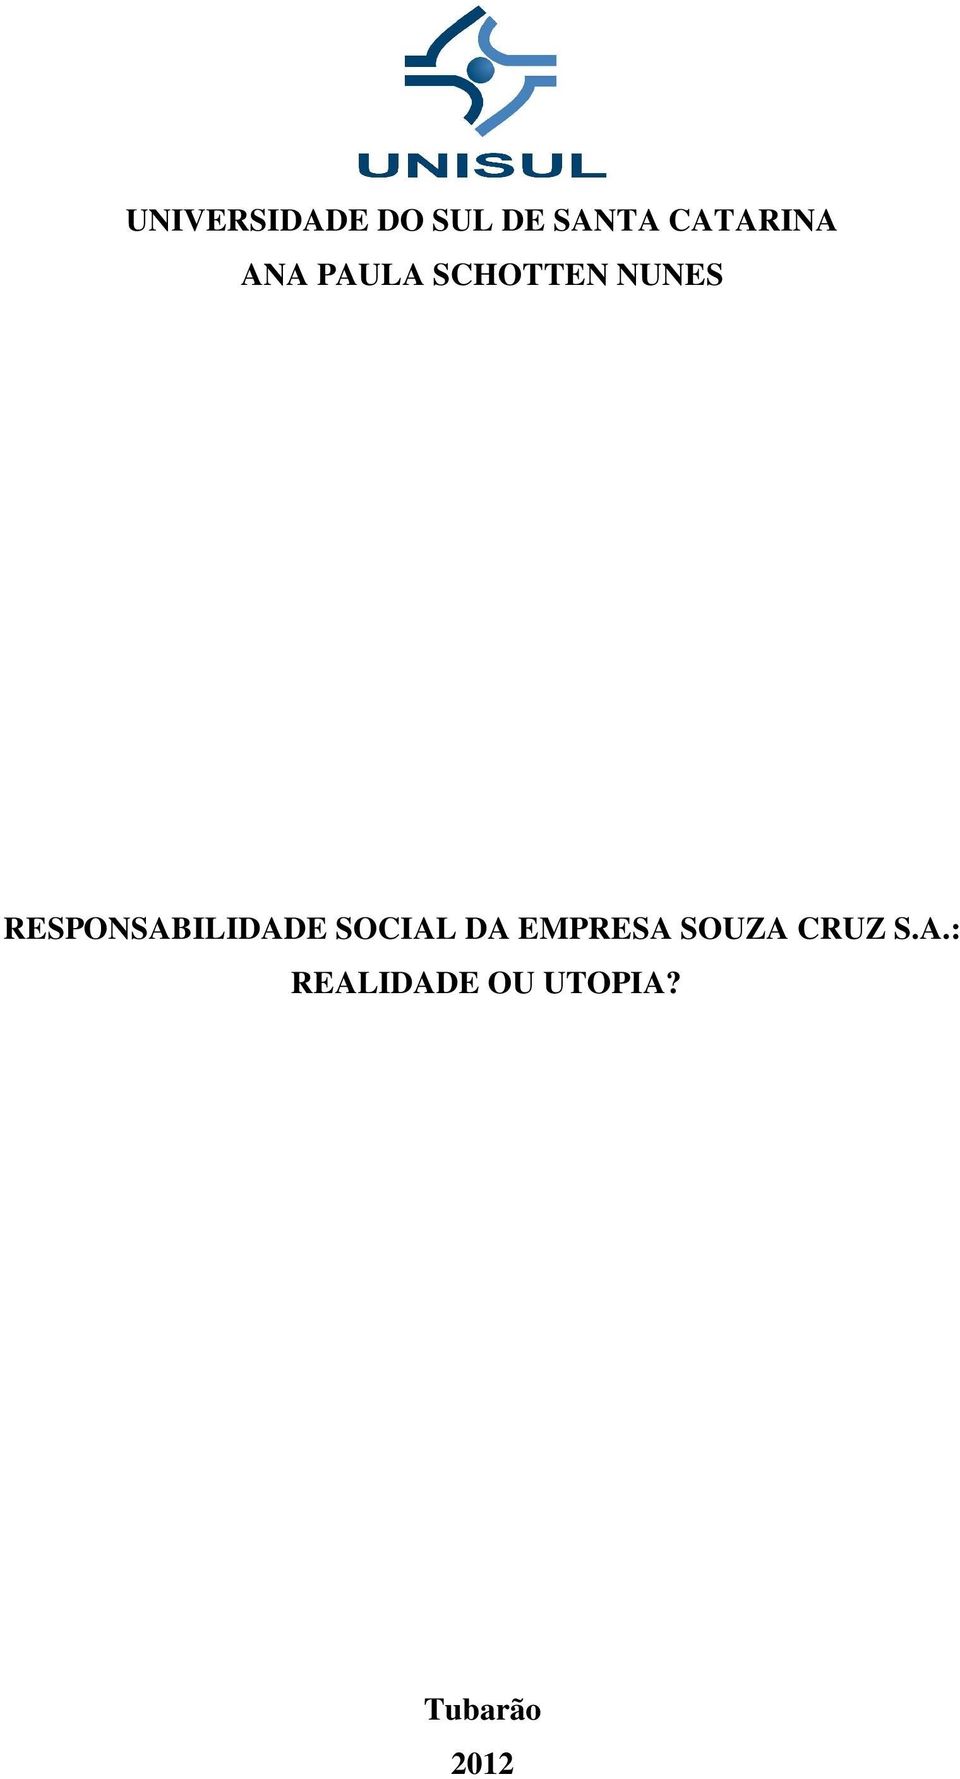 RESPONSABILIDADE SOCIAL DA EMPRESA